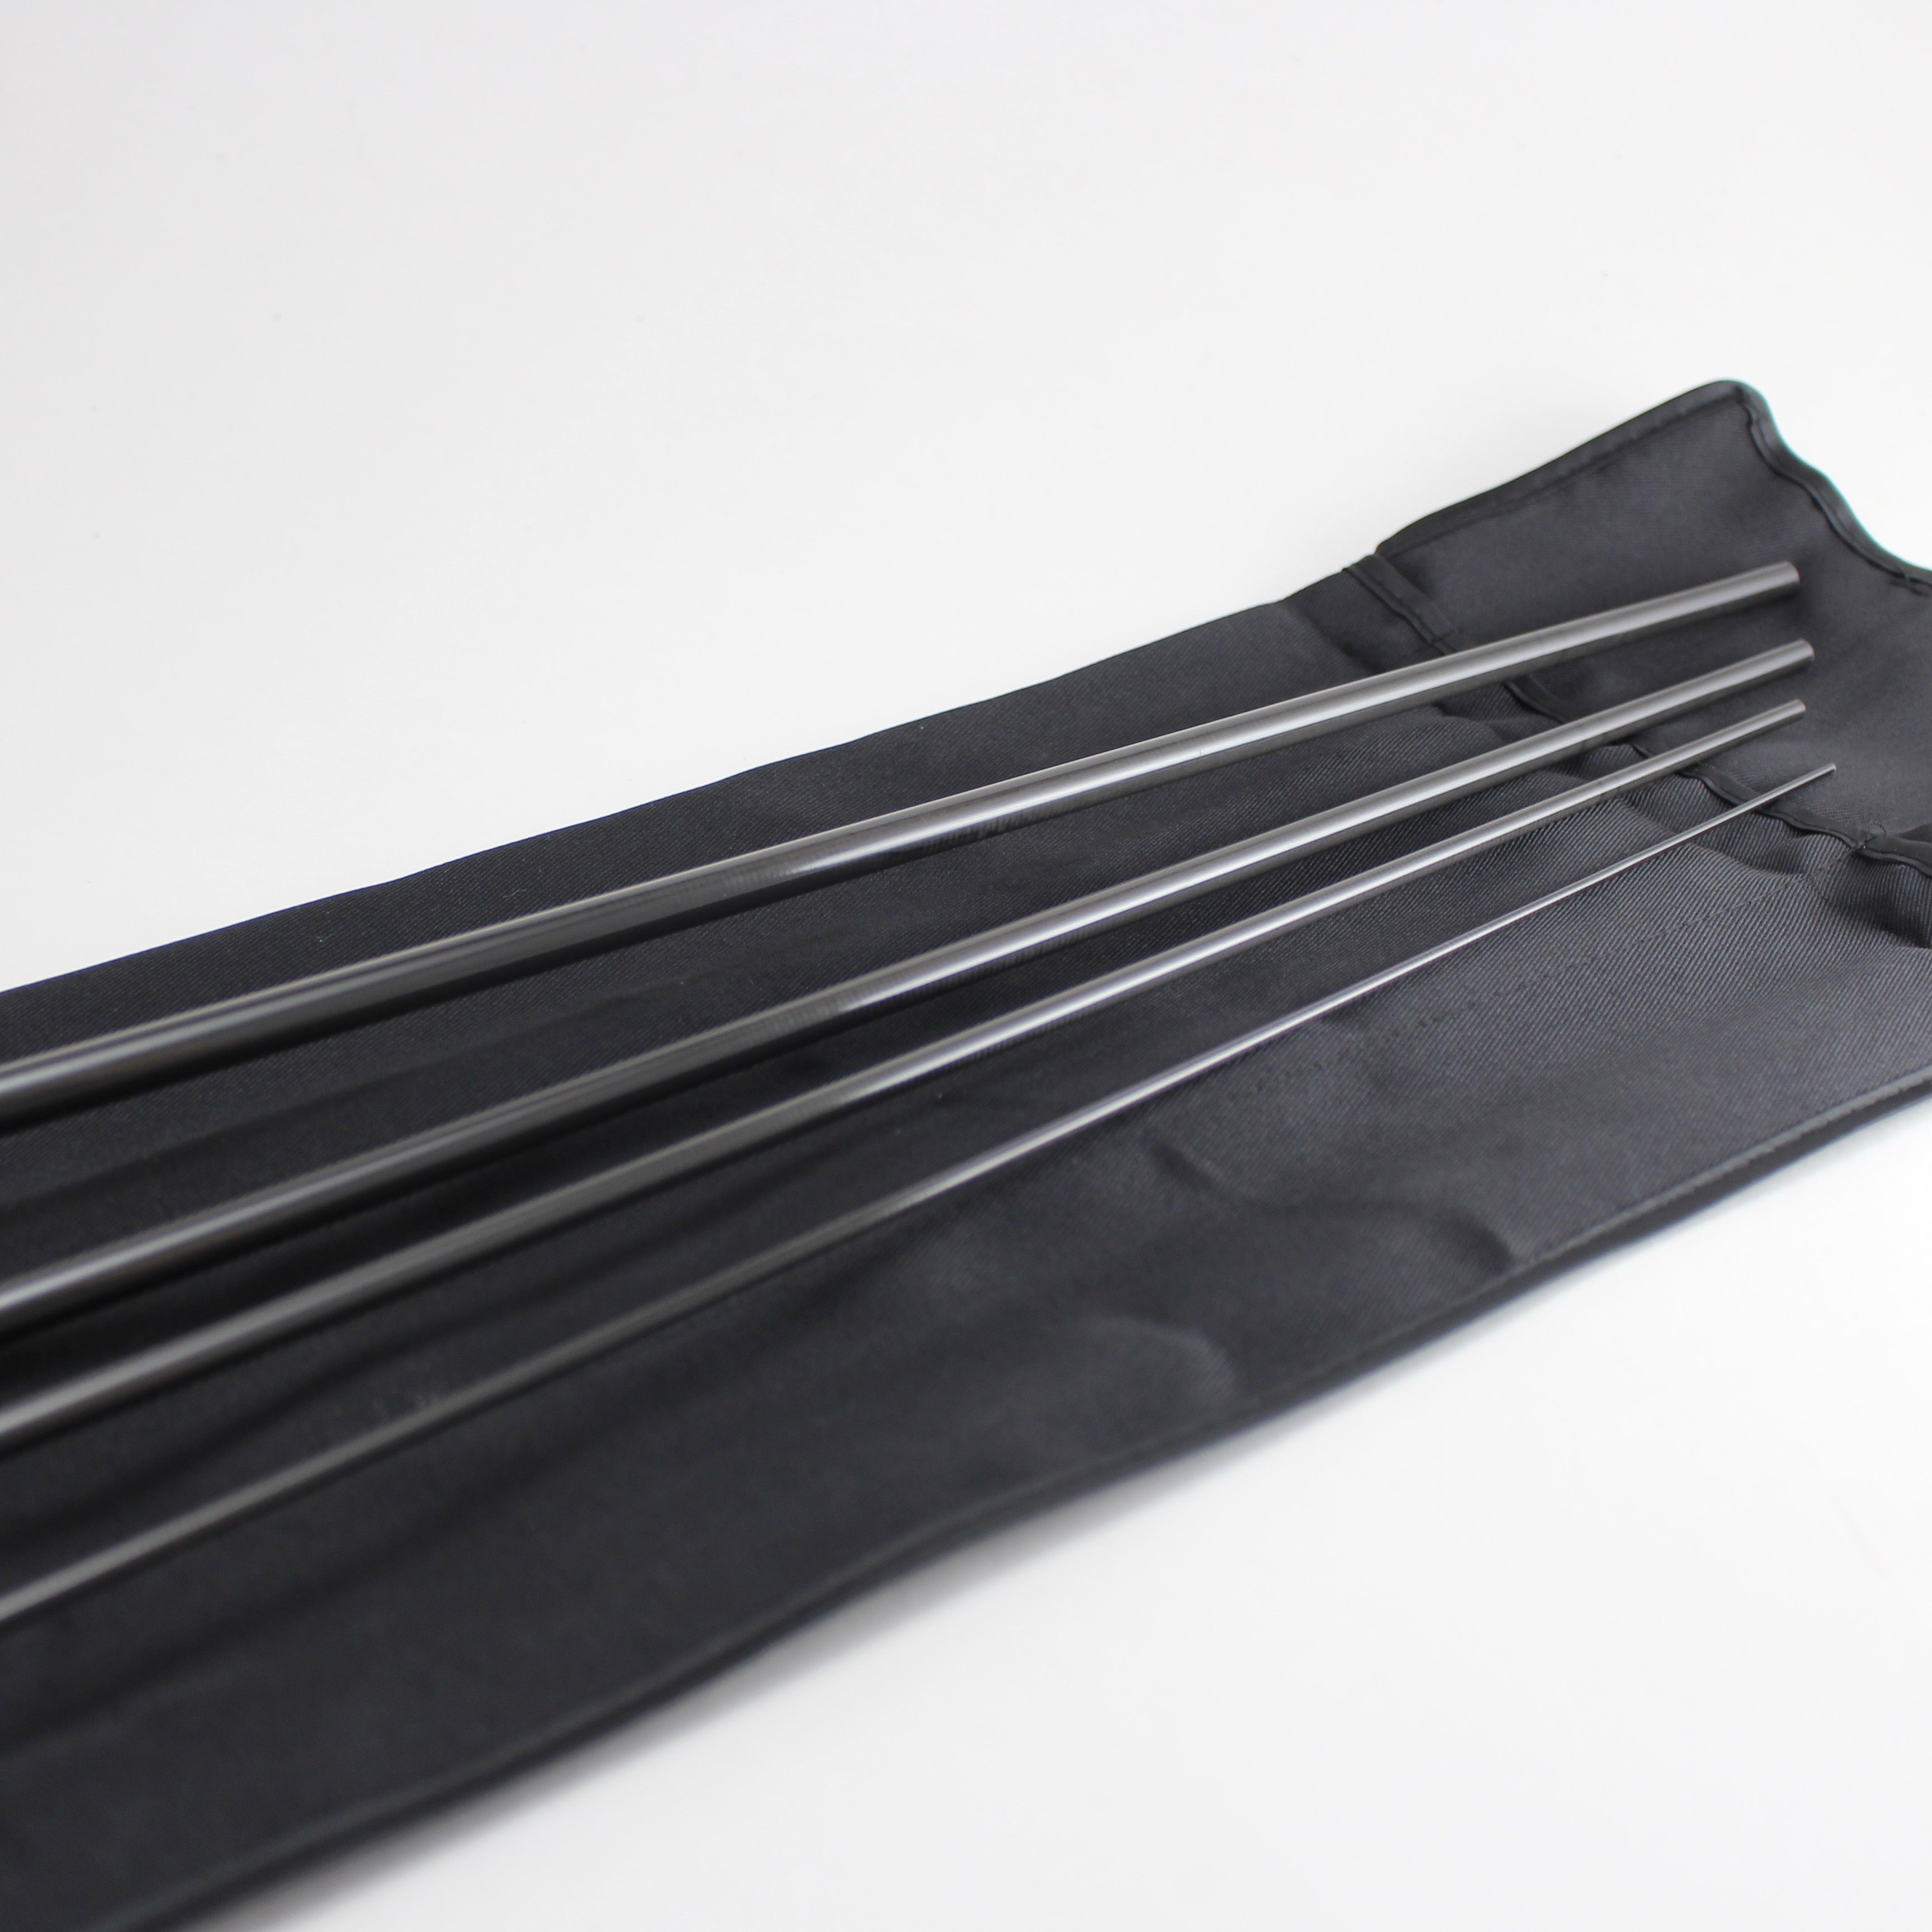 9' 6 5wt. (four piece) carbon fiber fly rod blank